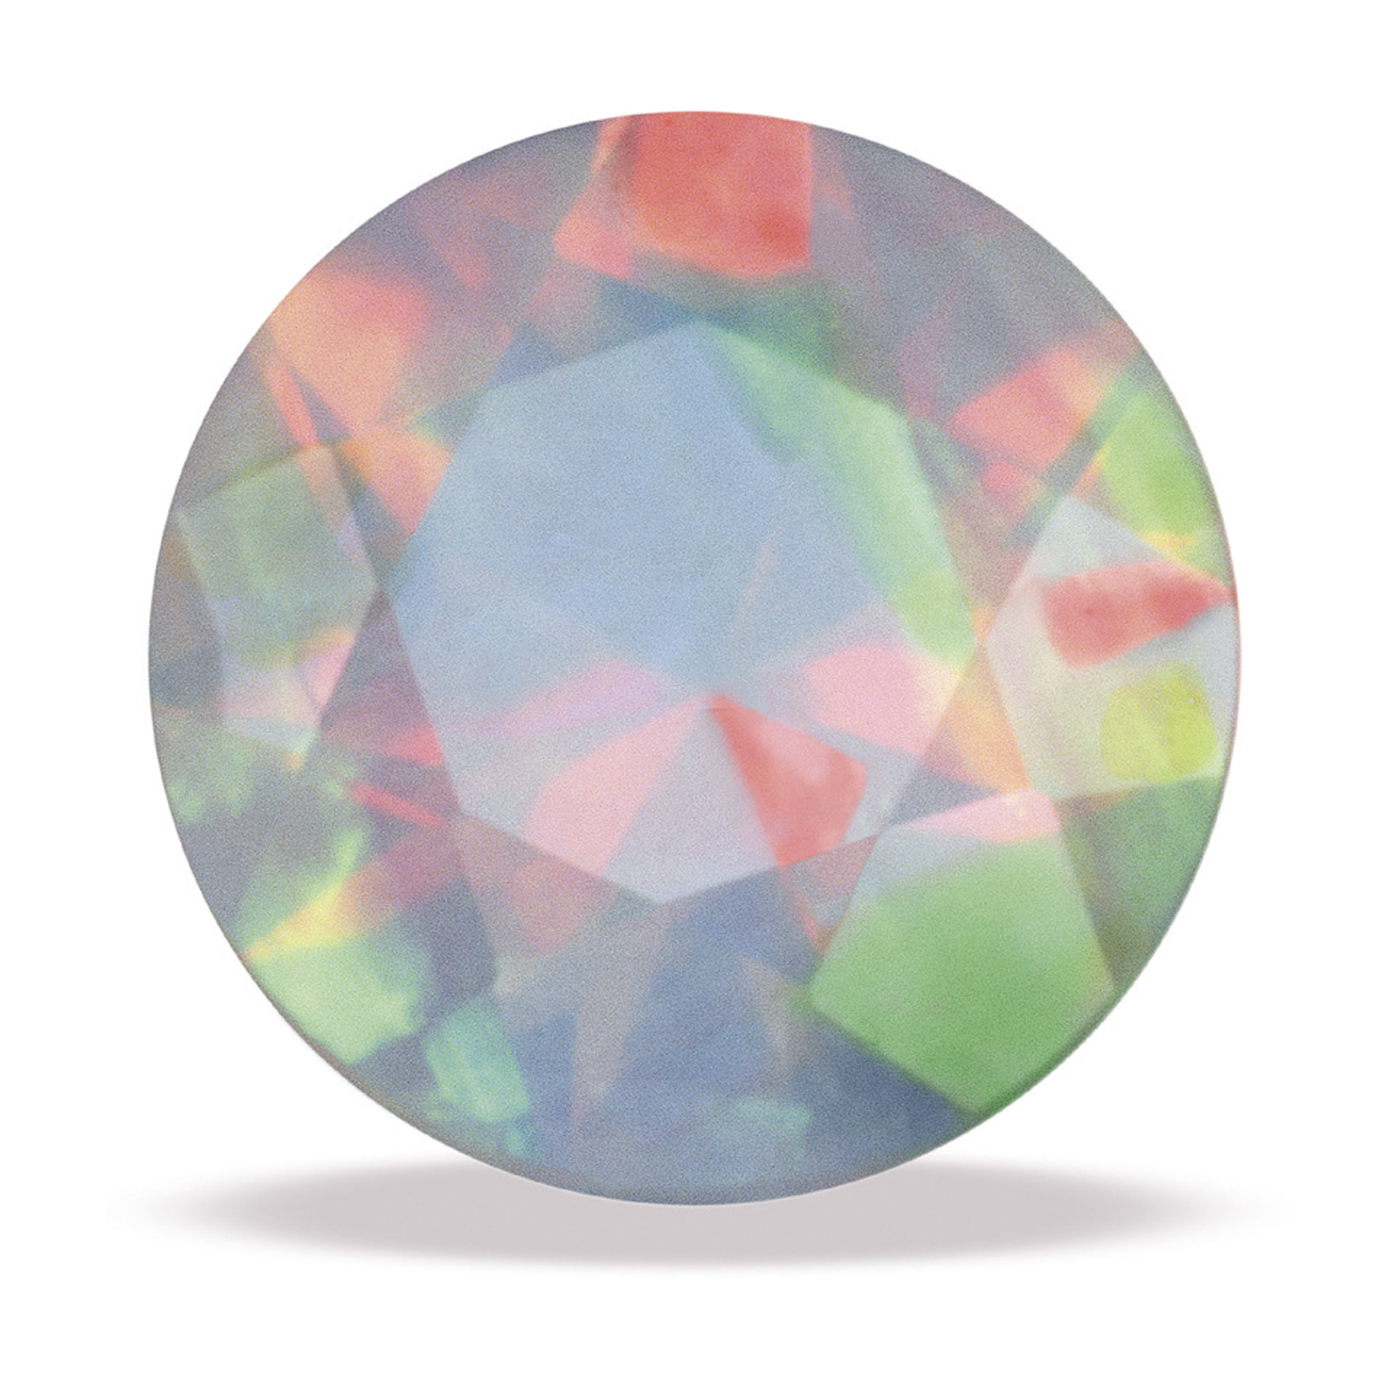 Swarovski Opal, synth., rund, facettiert, weiß, ø 2 mm - 1 Stück